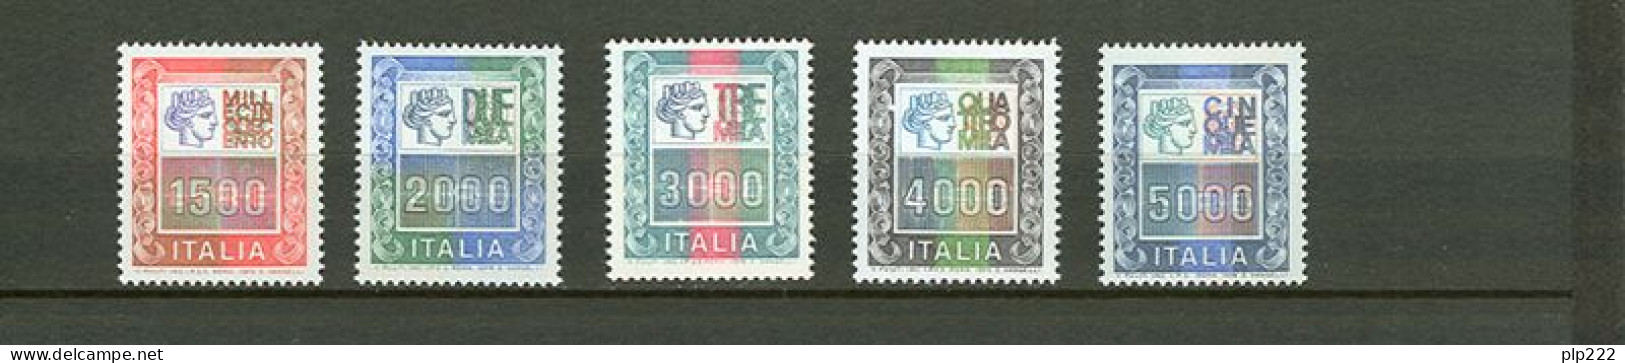 Italia Repubblica Collezione completa / Complete collection 1961/79  MNH/** VF